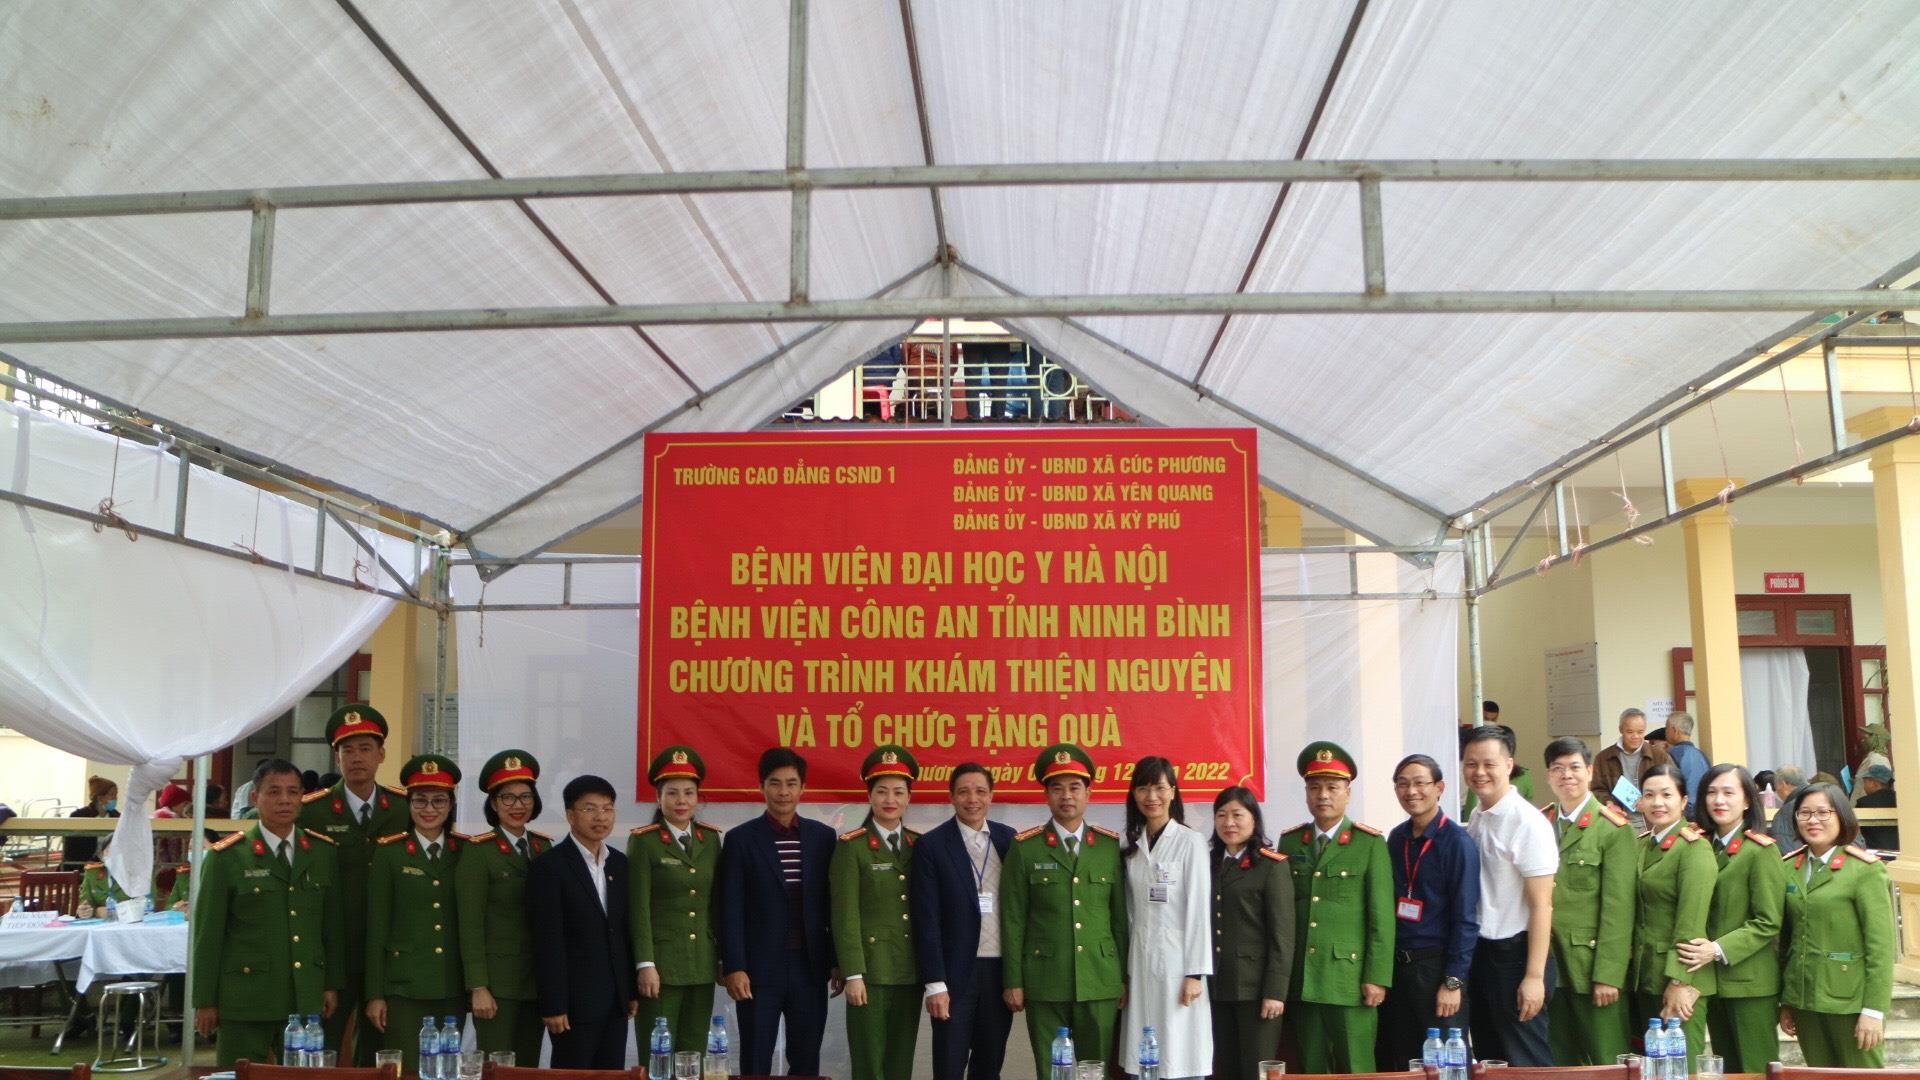 Chương trình tổ chức thăm khám bệnh thiện nguyện, tặng sách, tặng quà tại tỉnh Ninh Bình